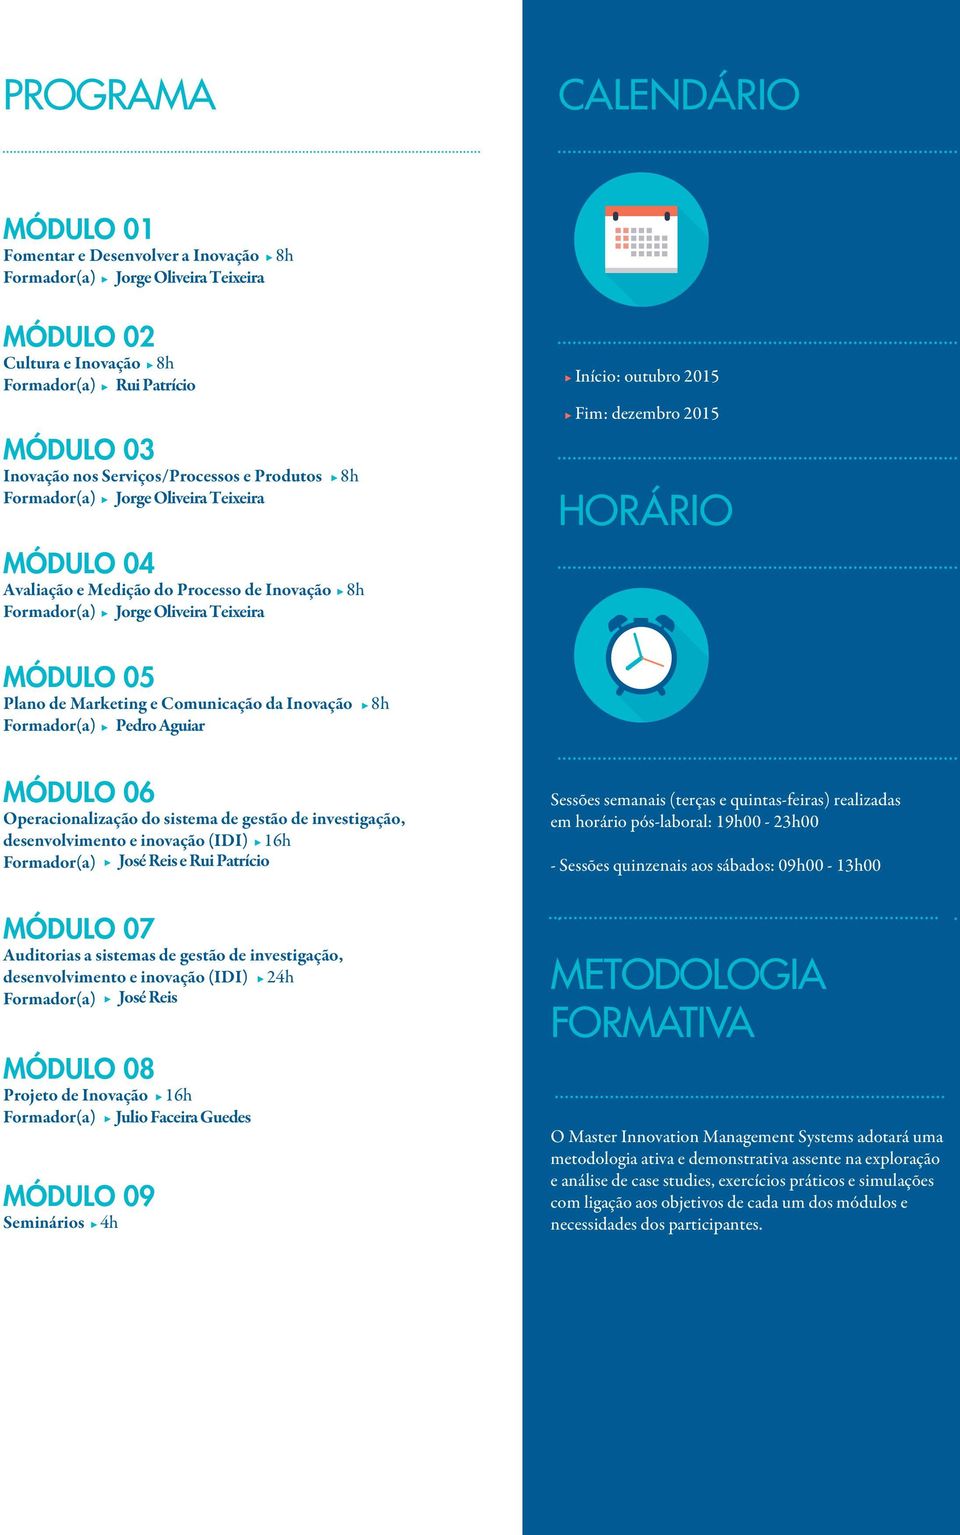 2015 HORÁRIO MÓDULO 05 Plano de Marketing e Comunicação da Inovação Formador(a) Pedro Aguiar 8h MÓDULO 06 Operacionalização do sistema de gestão de investigação, desenvolvimento e inovação (IDI) 16h